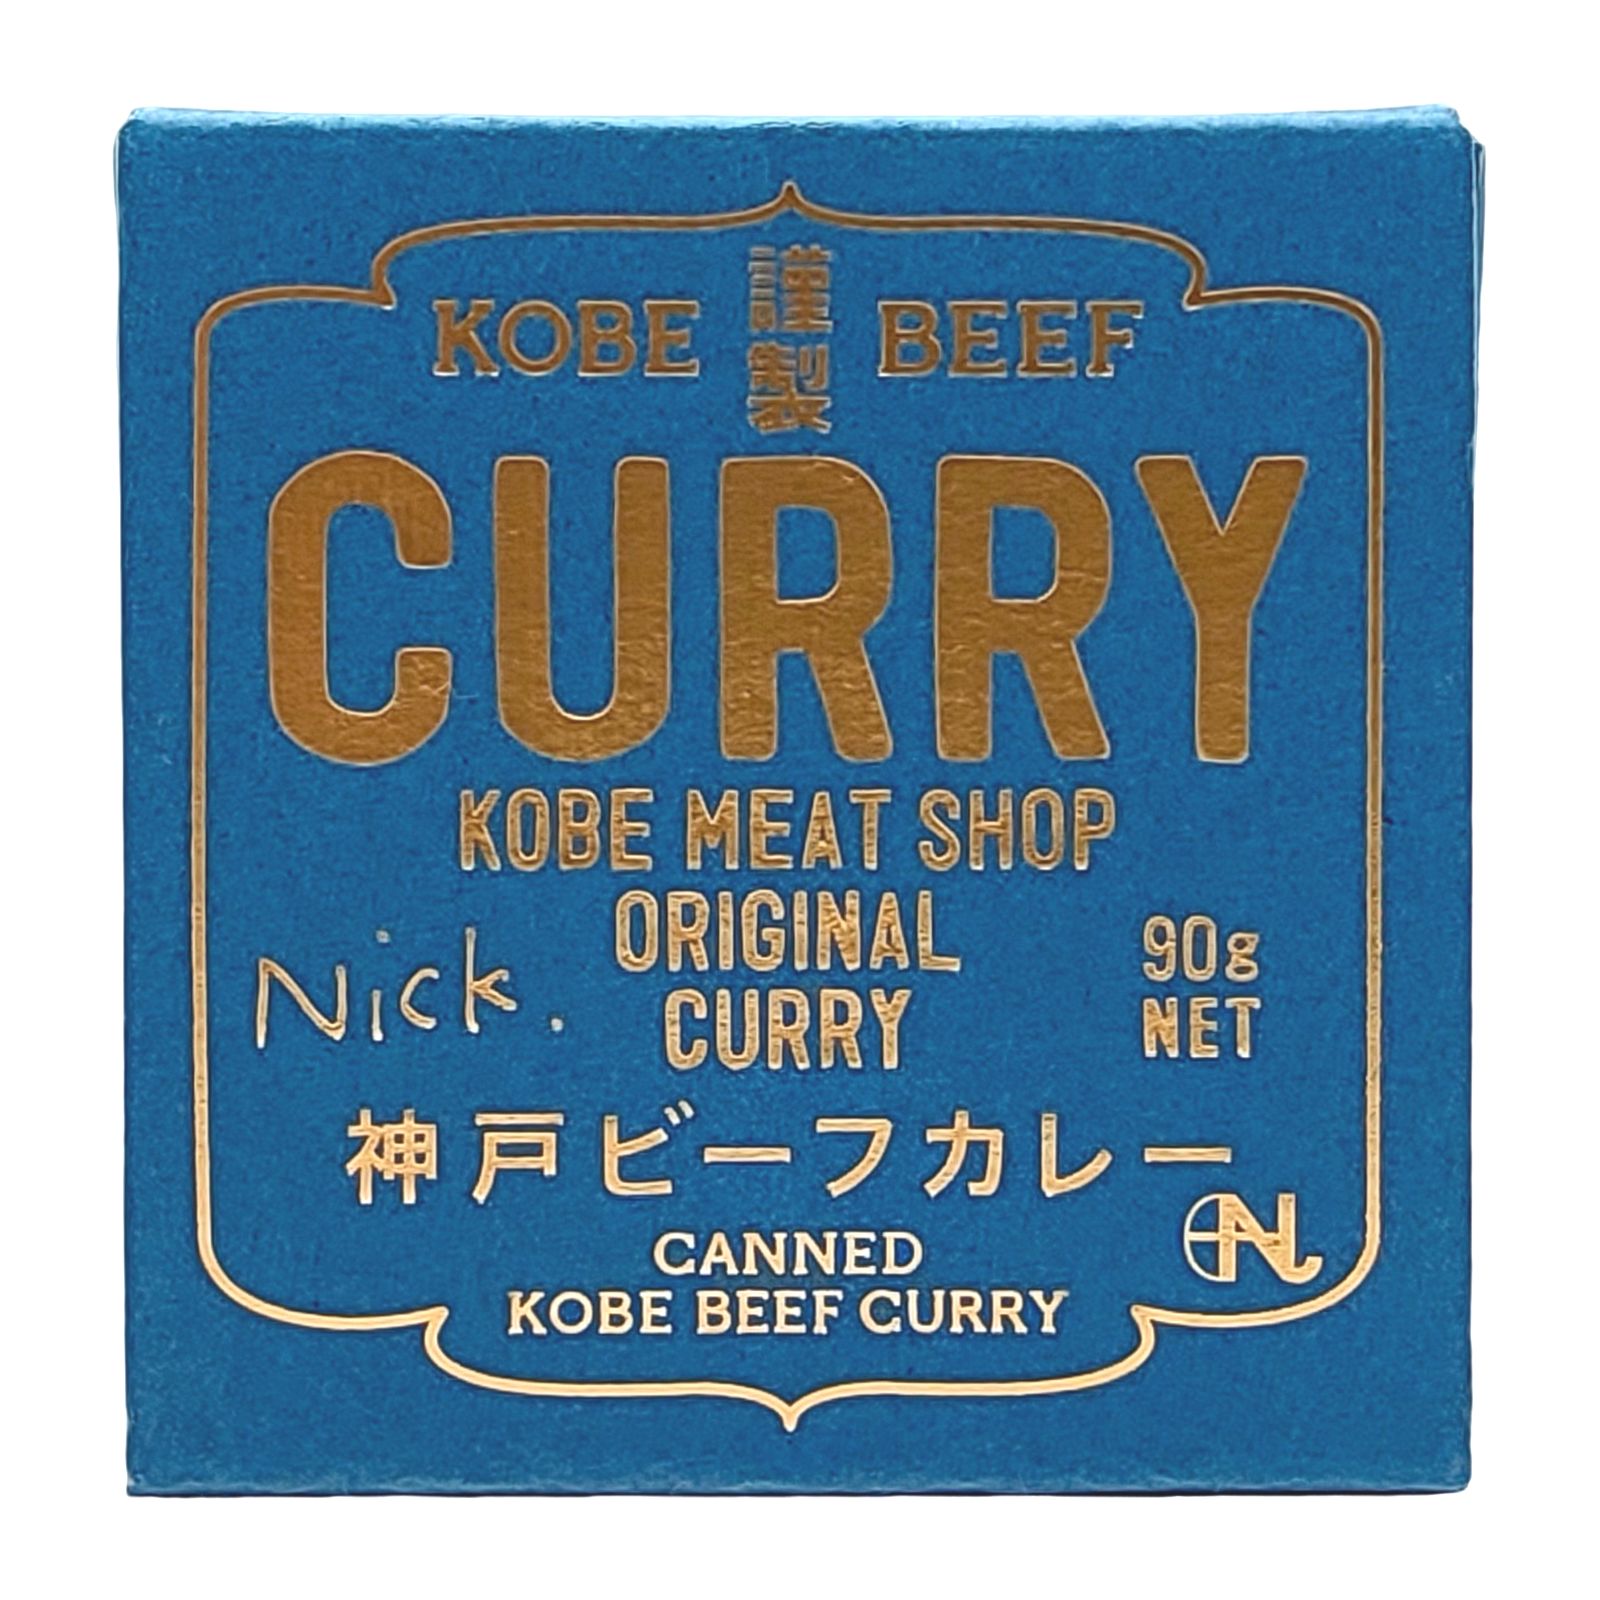 神戸ビーフのカレー缶詰 画像15